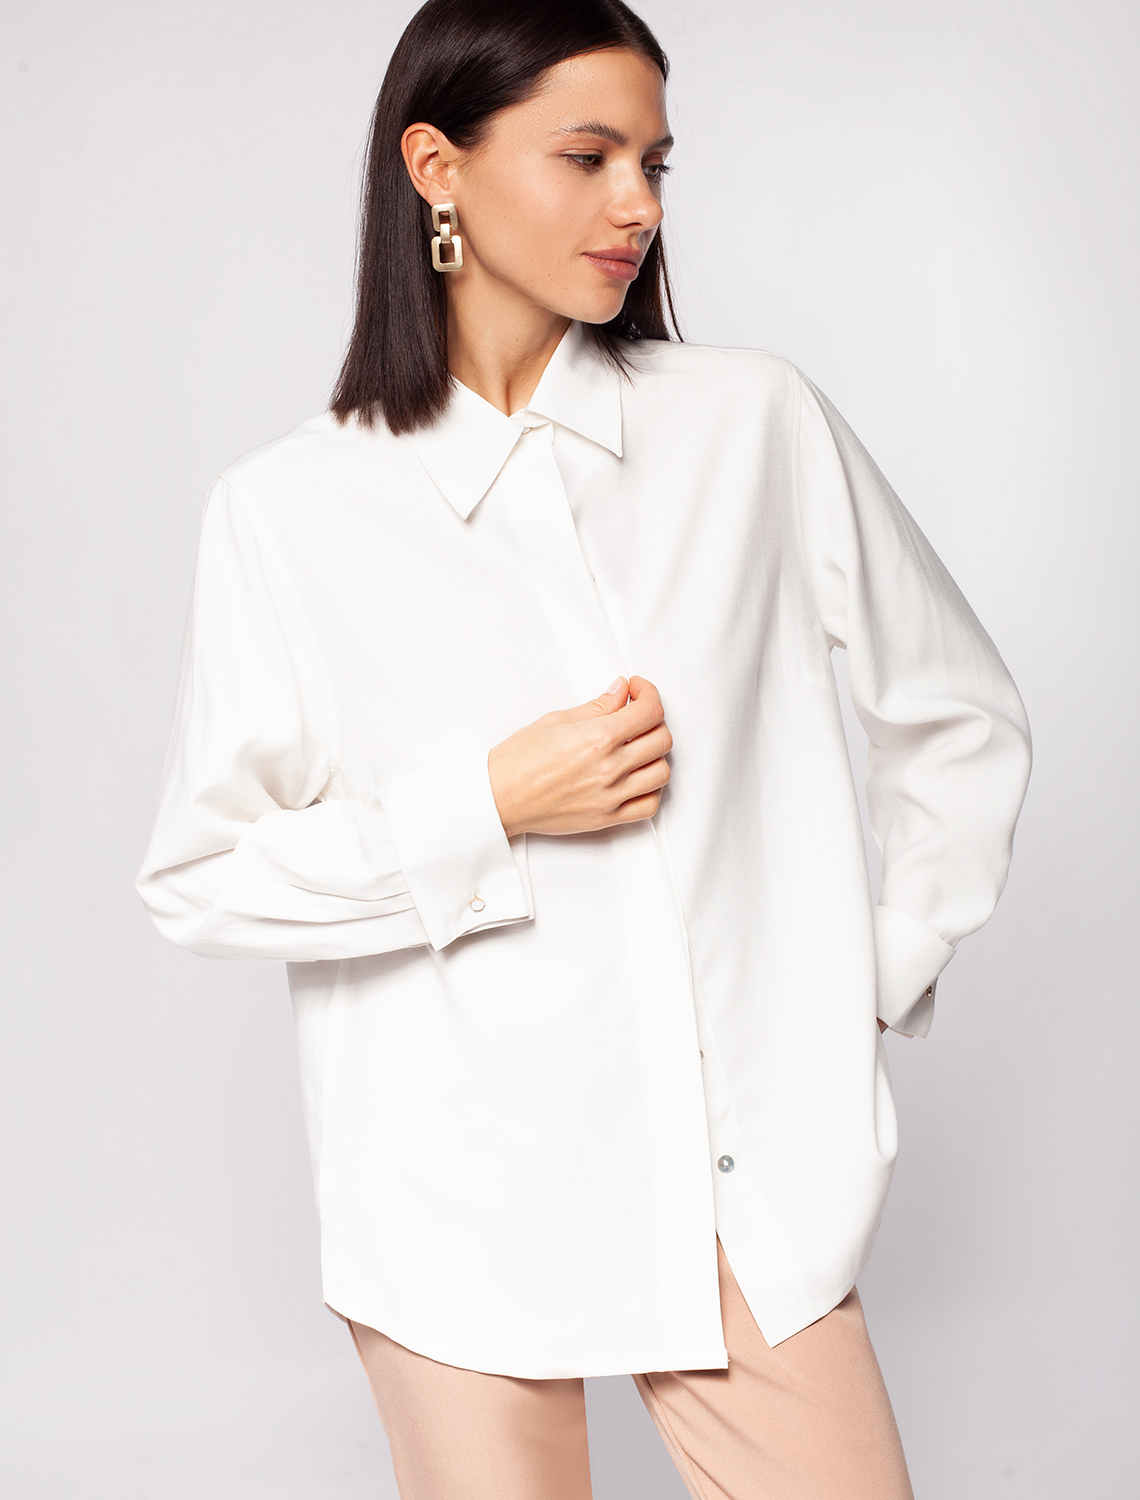 Свободная блузка из плотного лиоцелла с манжетами на запонках